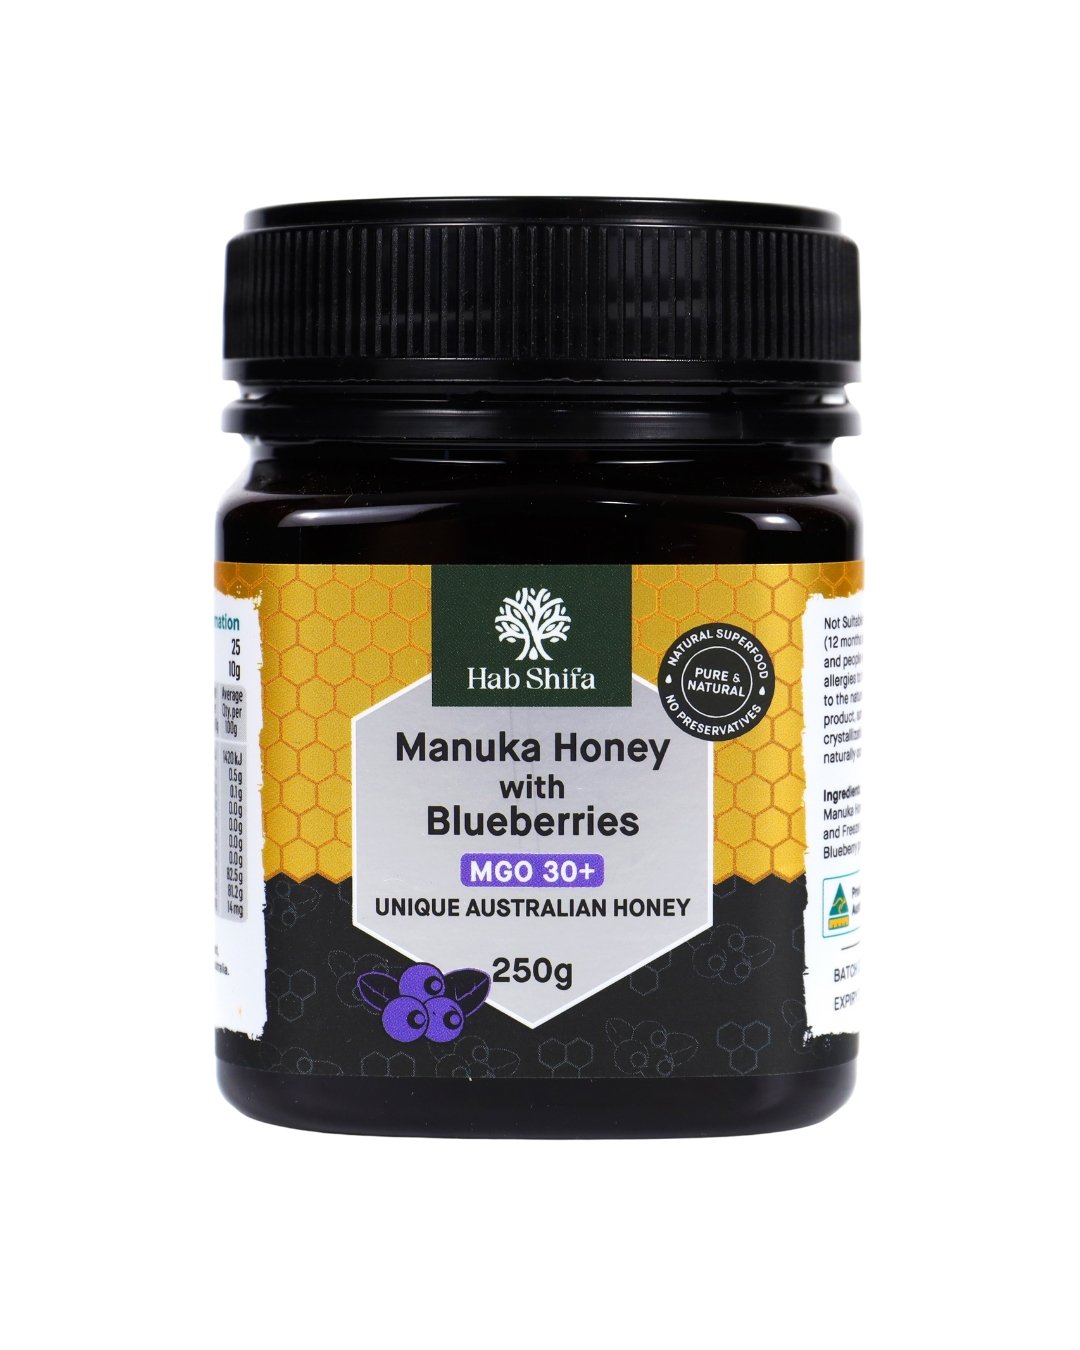 Manuka Honey (MGO 30+) with Blueberries 250g - Hab Shifa